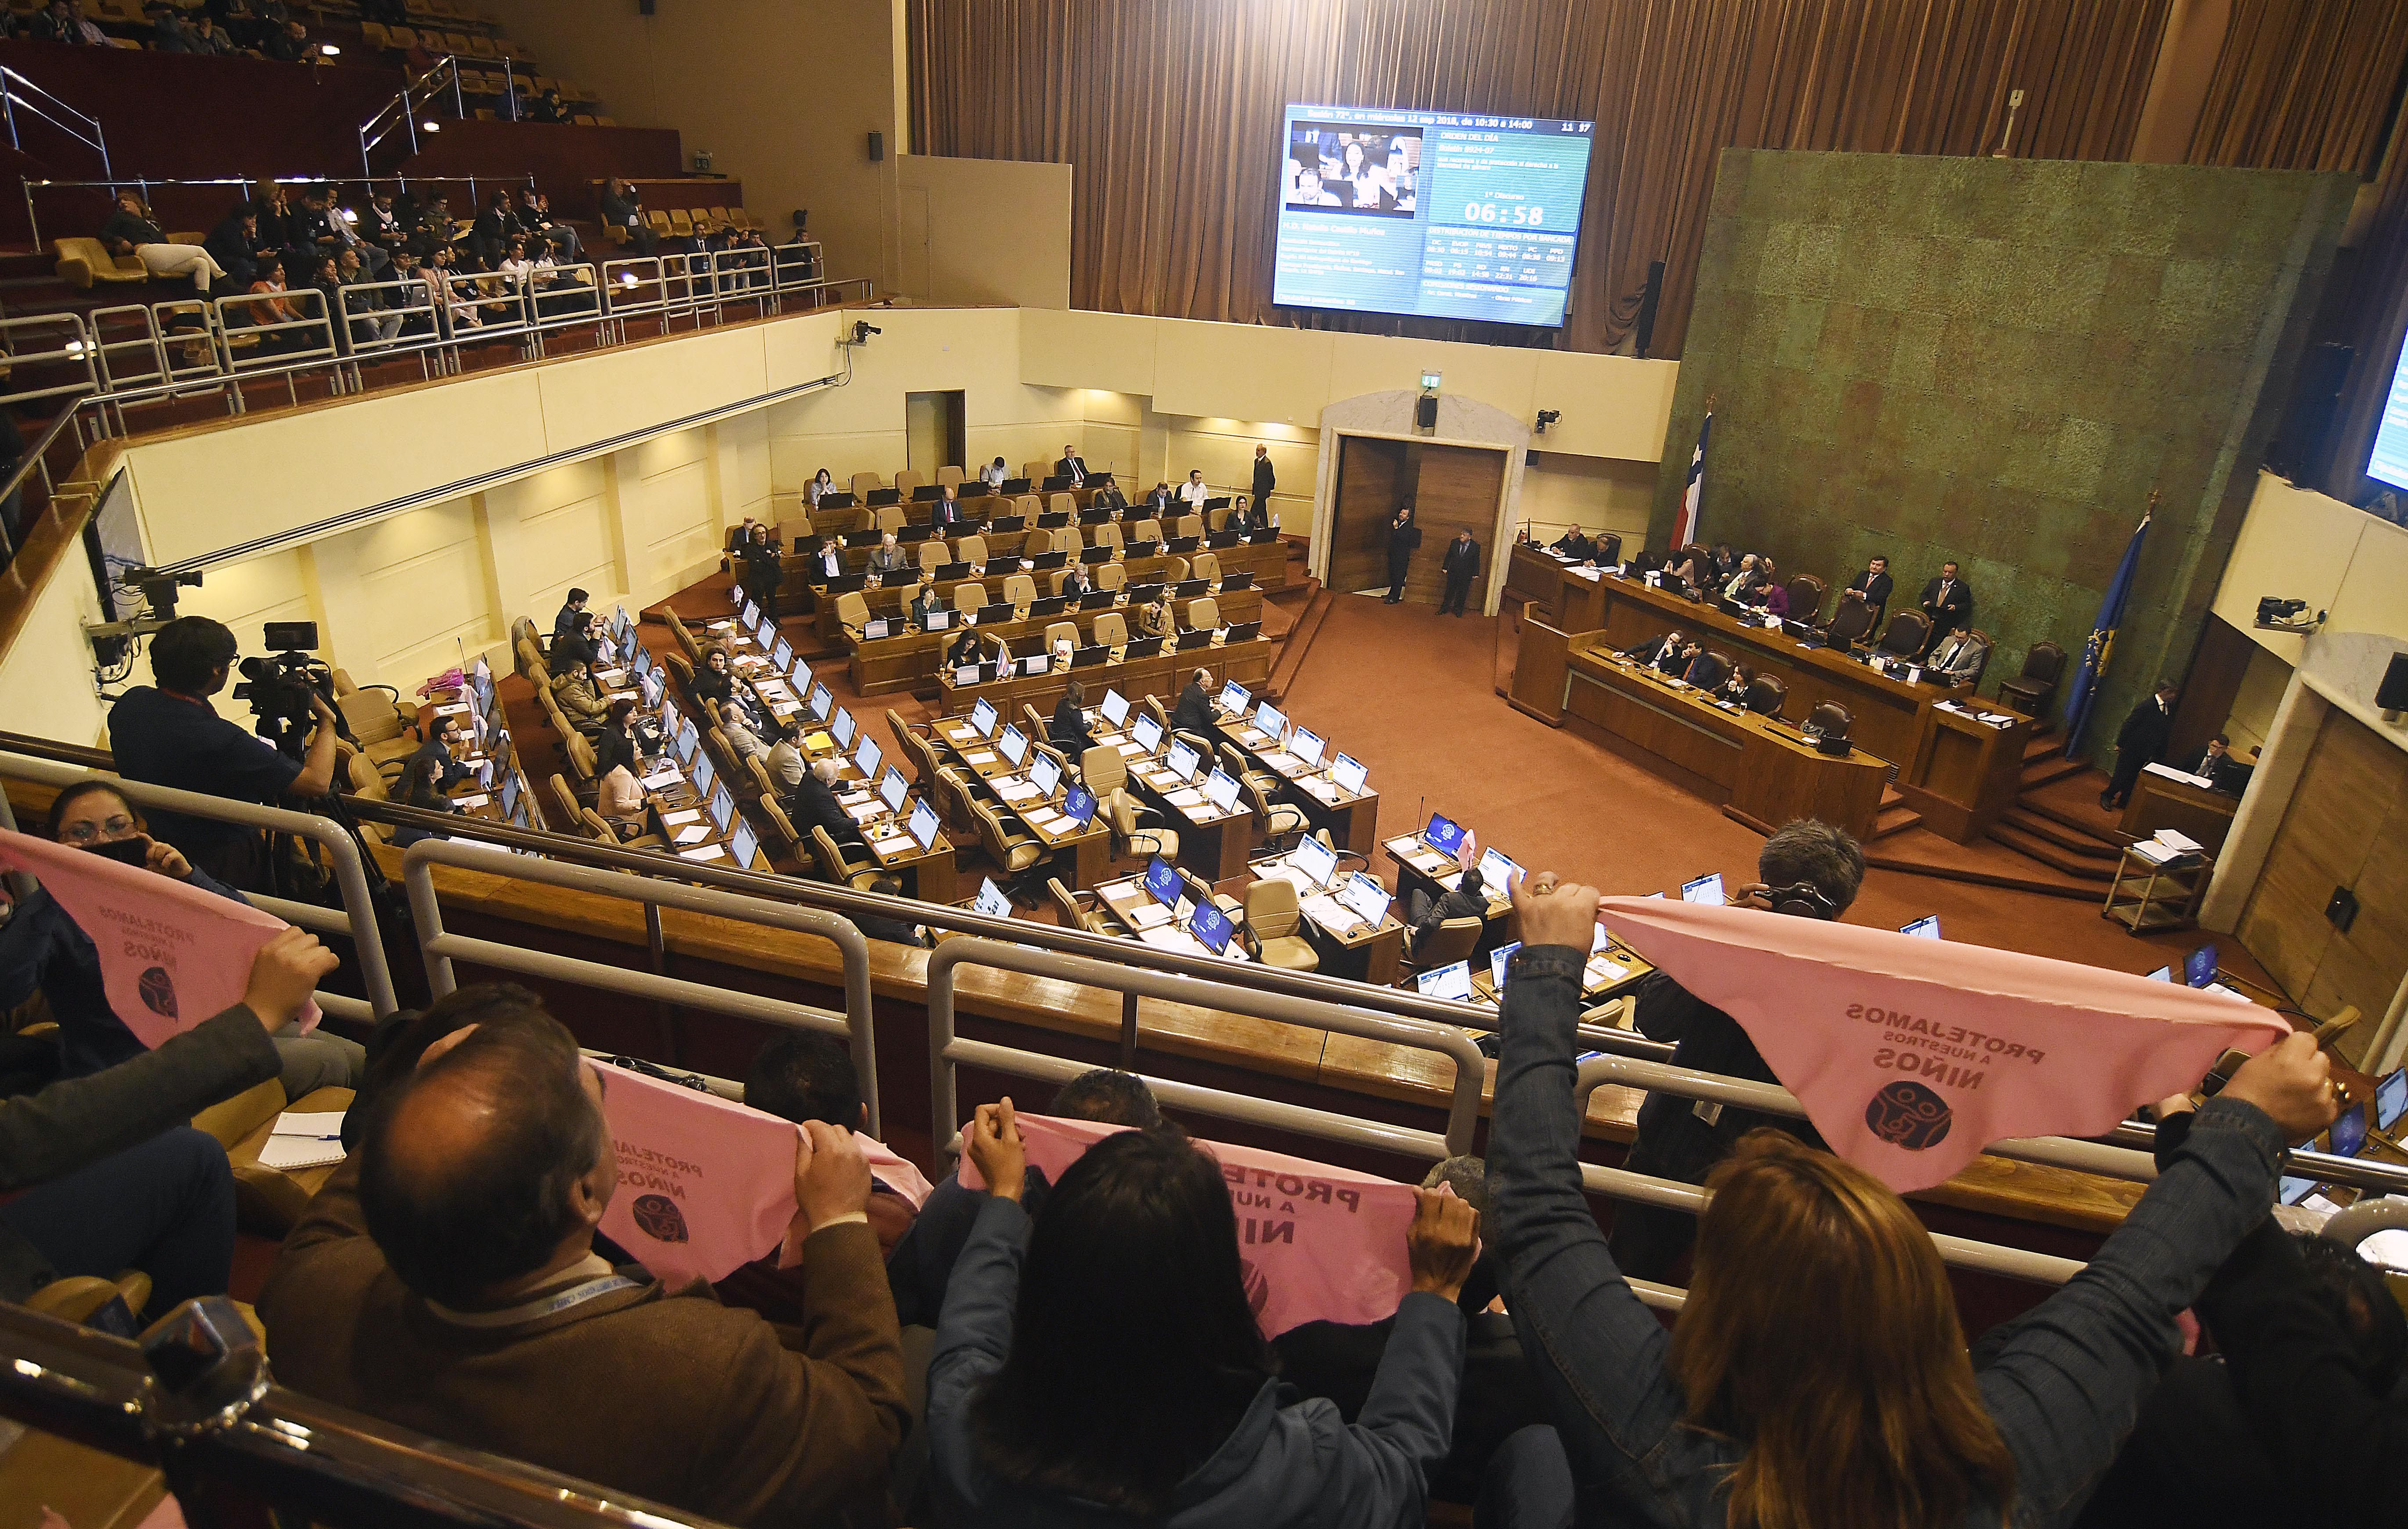 El parlamento chileno tendrá un papel importante para buscar consensos tras el rechazo a la Nueva Constitución (PABLO OVALLE ISASMENDI/AGENCIA U)
